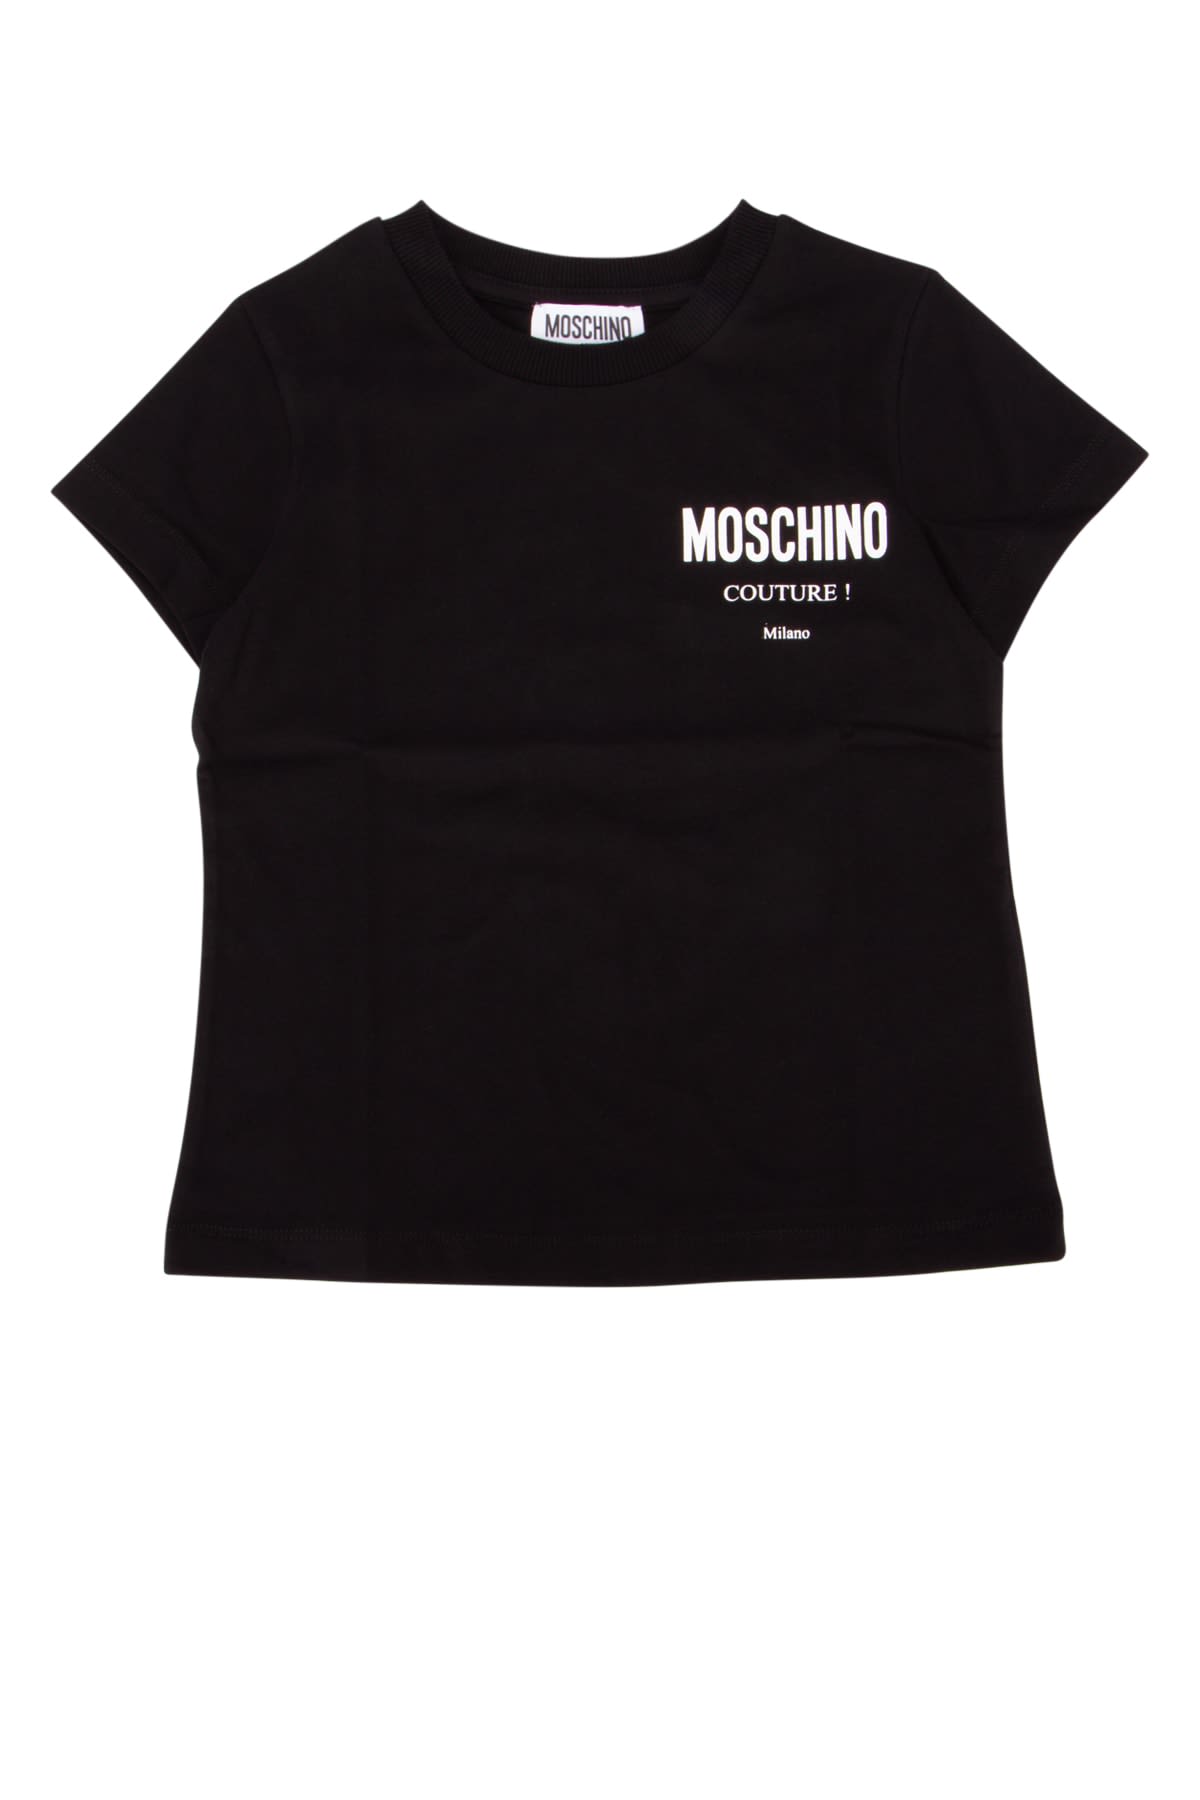 Moschino Kids' T-shirt In Multi